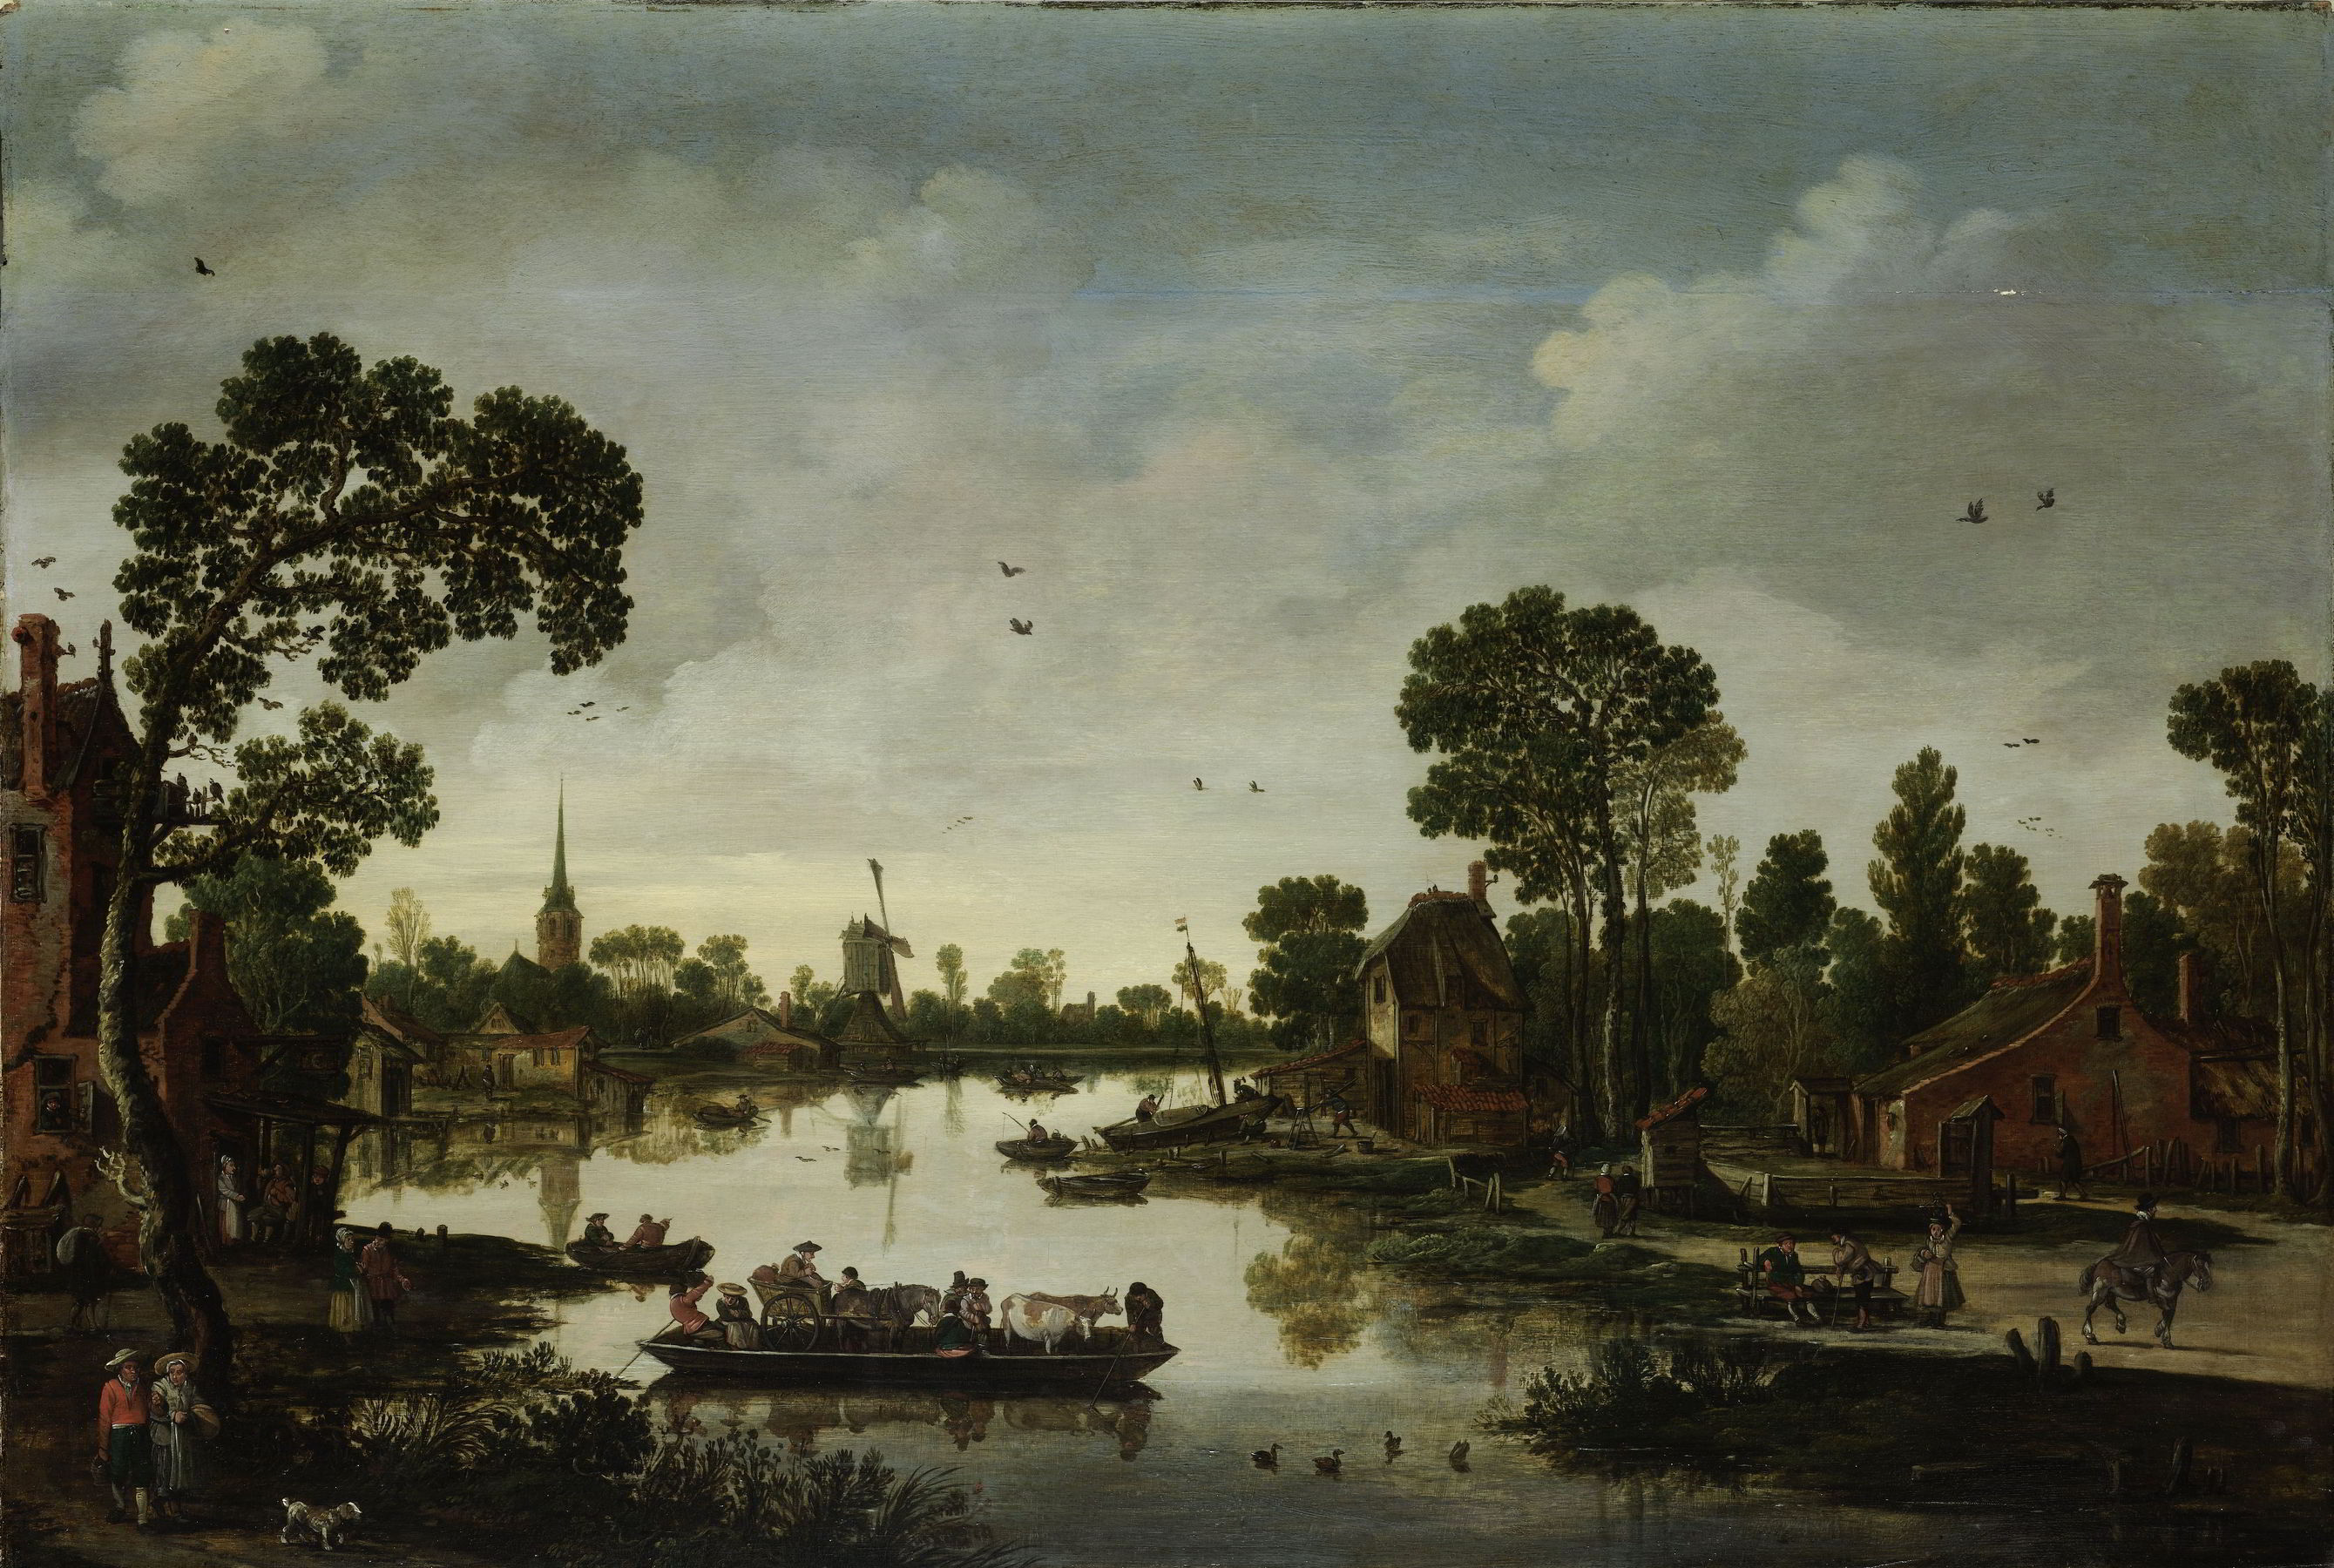 The Cattle Ferry by Esaias van de Velde